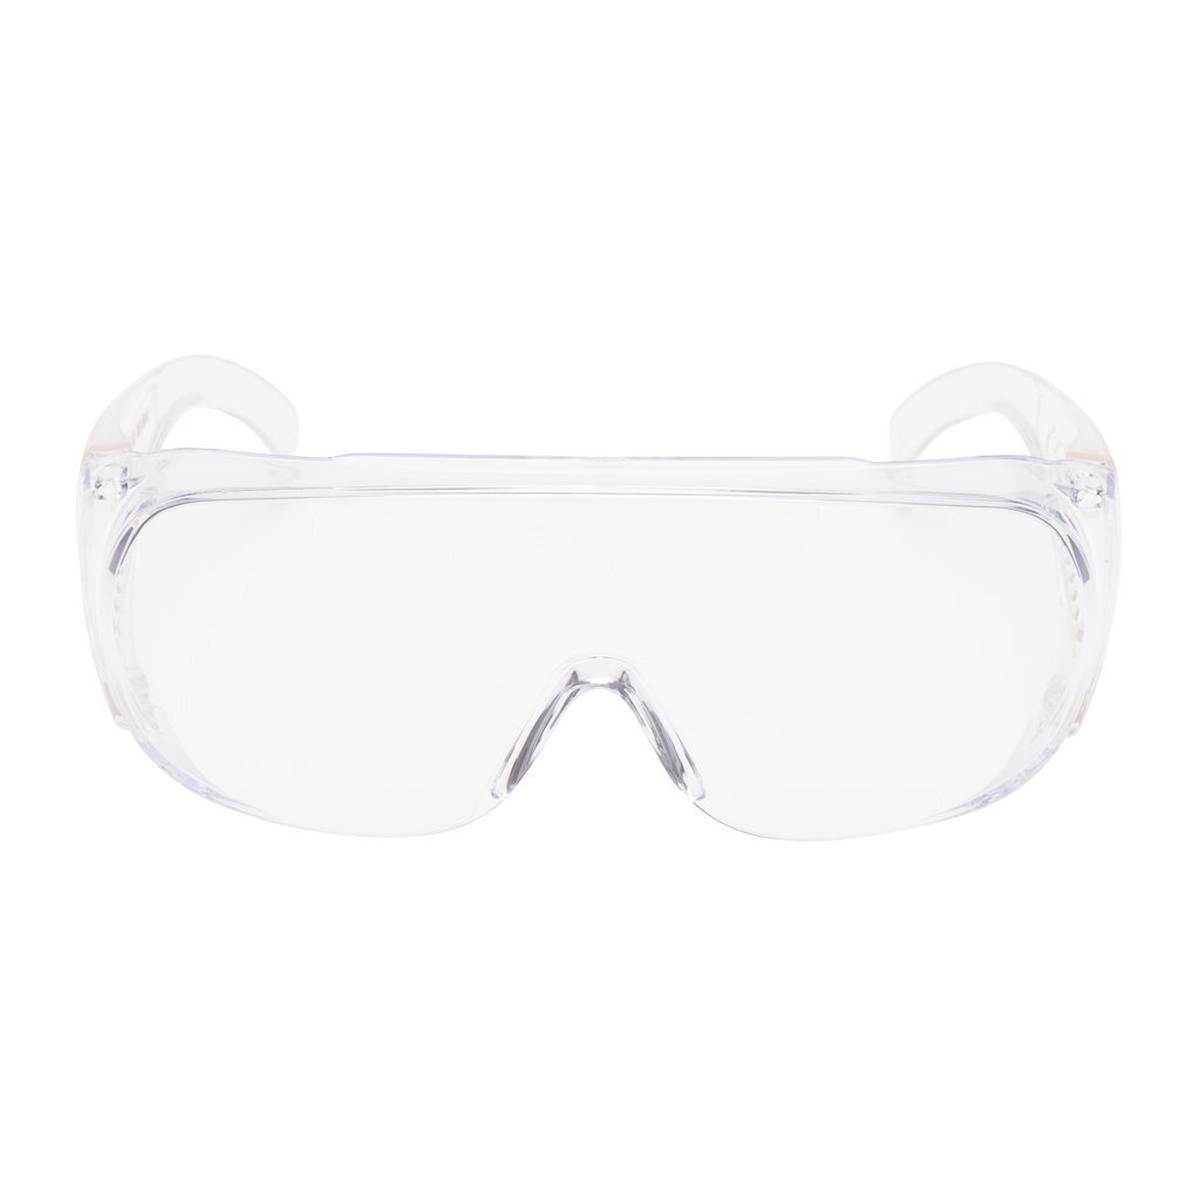 3M Visitor Schutzbrille UV, PC, klar, Rahmen transparent